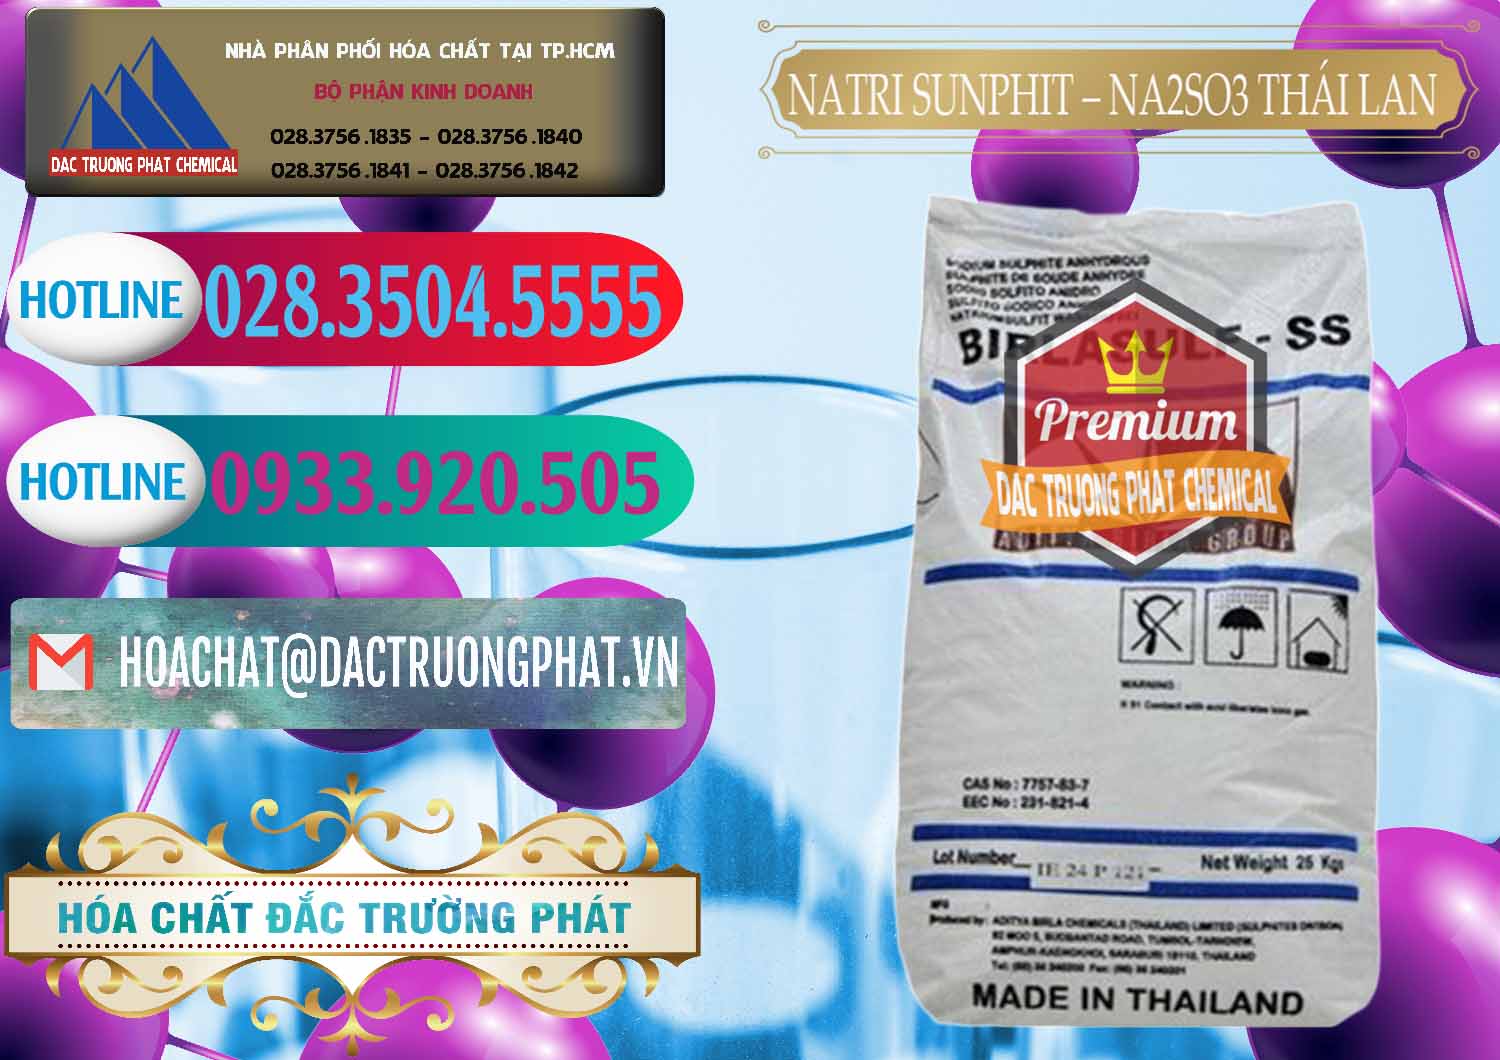 Cty chuyên nhập khẩu & bán Natri Sunphit - NA2SO3 Thái Lan - 0105 - Đơn vị chuyên kinh doanh & cung cấp hóa chất tại TP.HCM - truongphat.vn